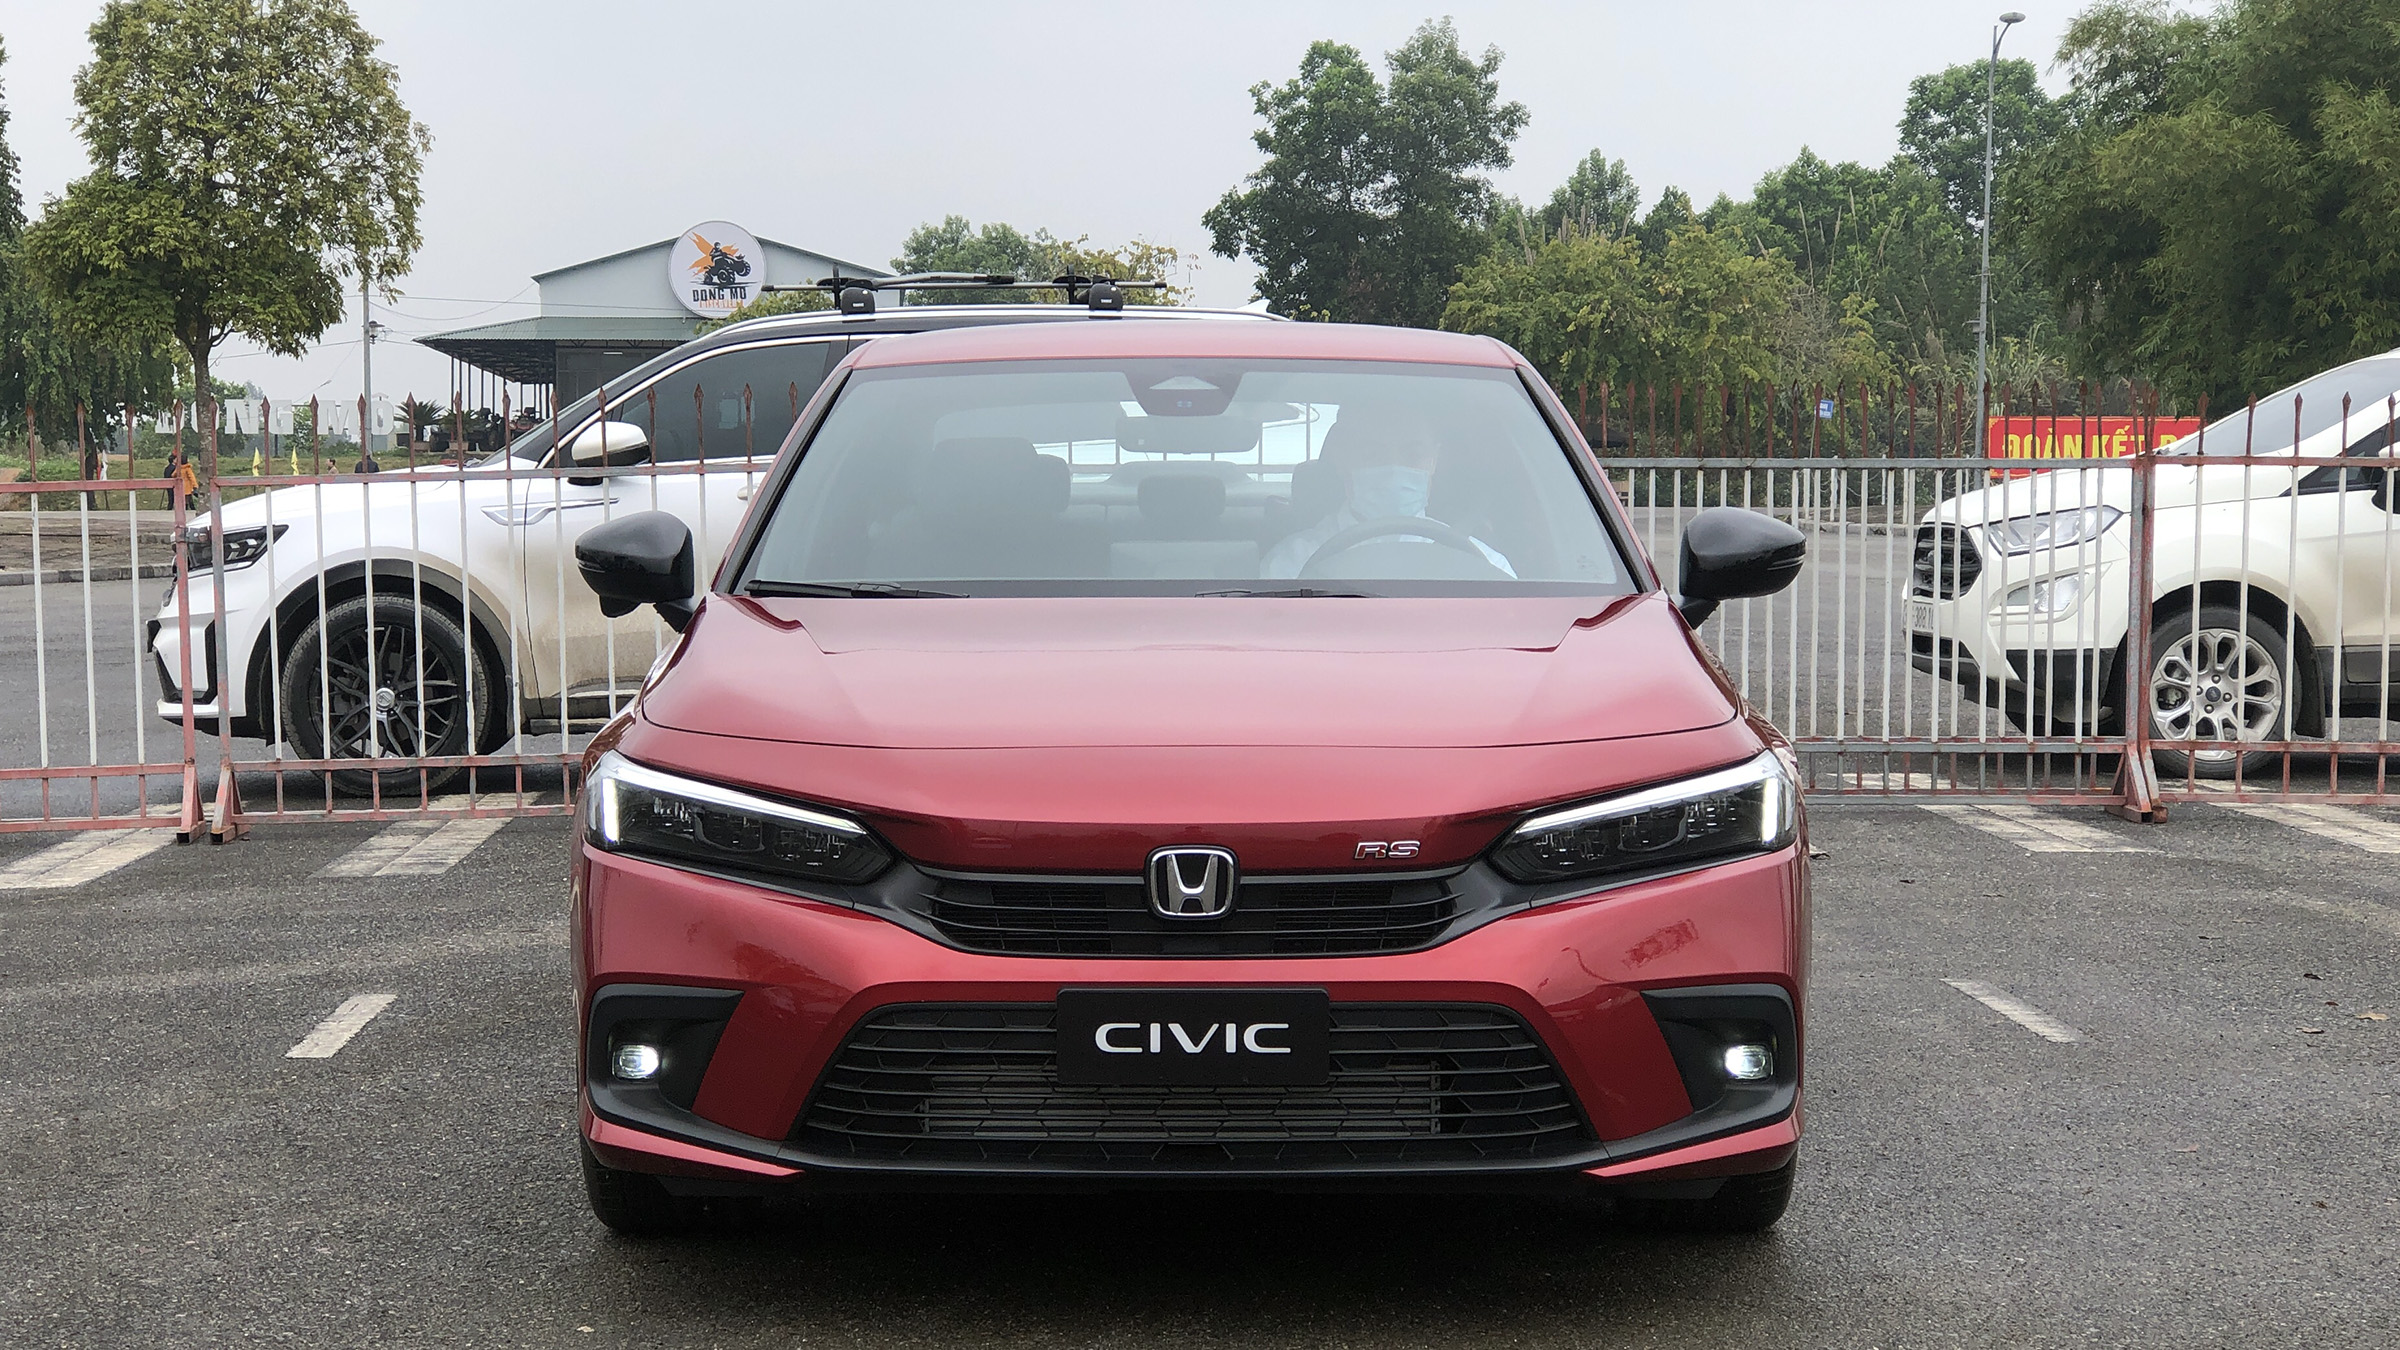 Bảng giá ô tô Honda tháng 4: Honda Civic được ưu đãi 100% lệ phí trước bạ